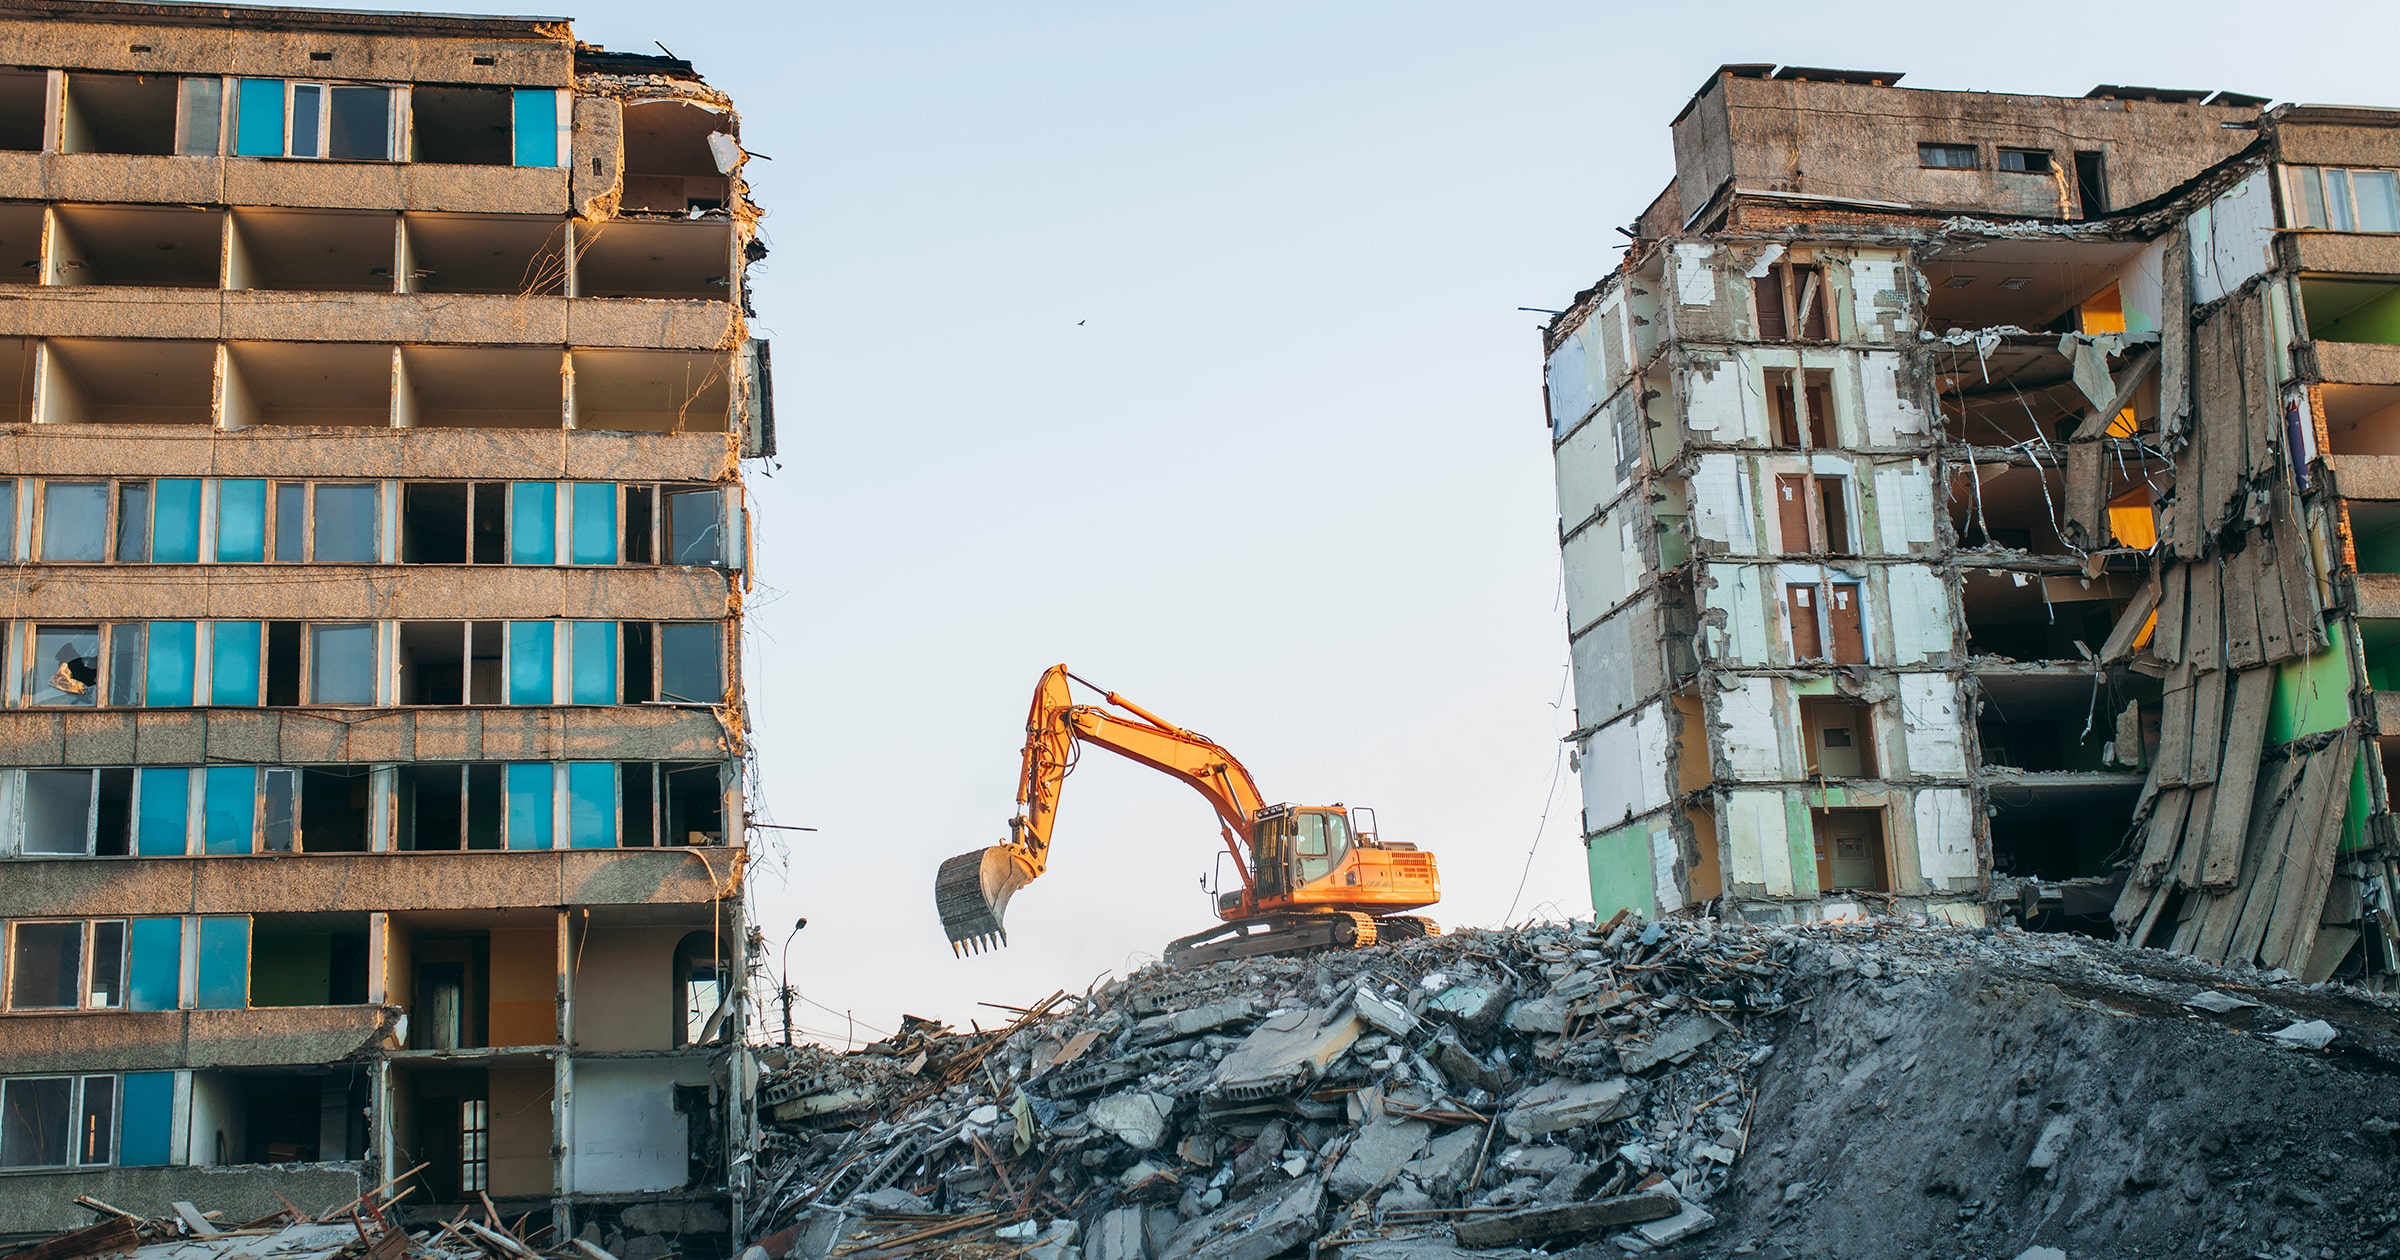 Demolition estimation services